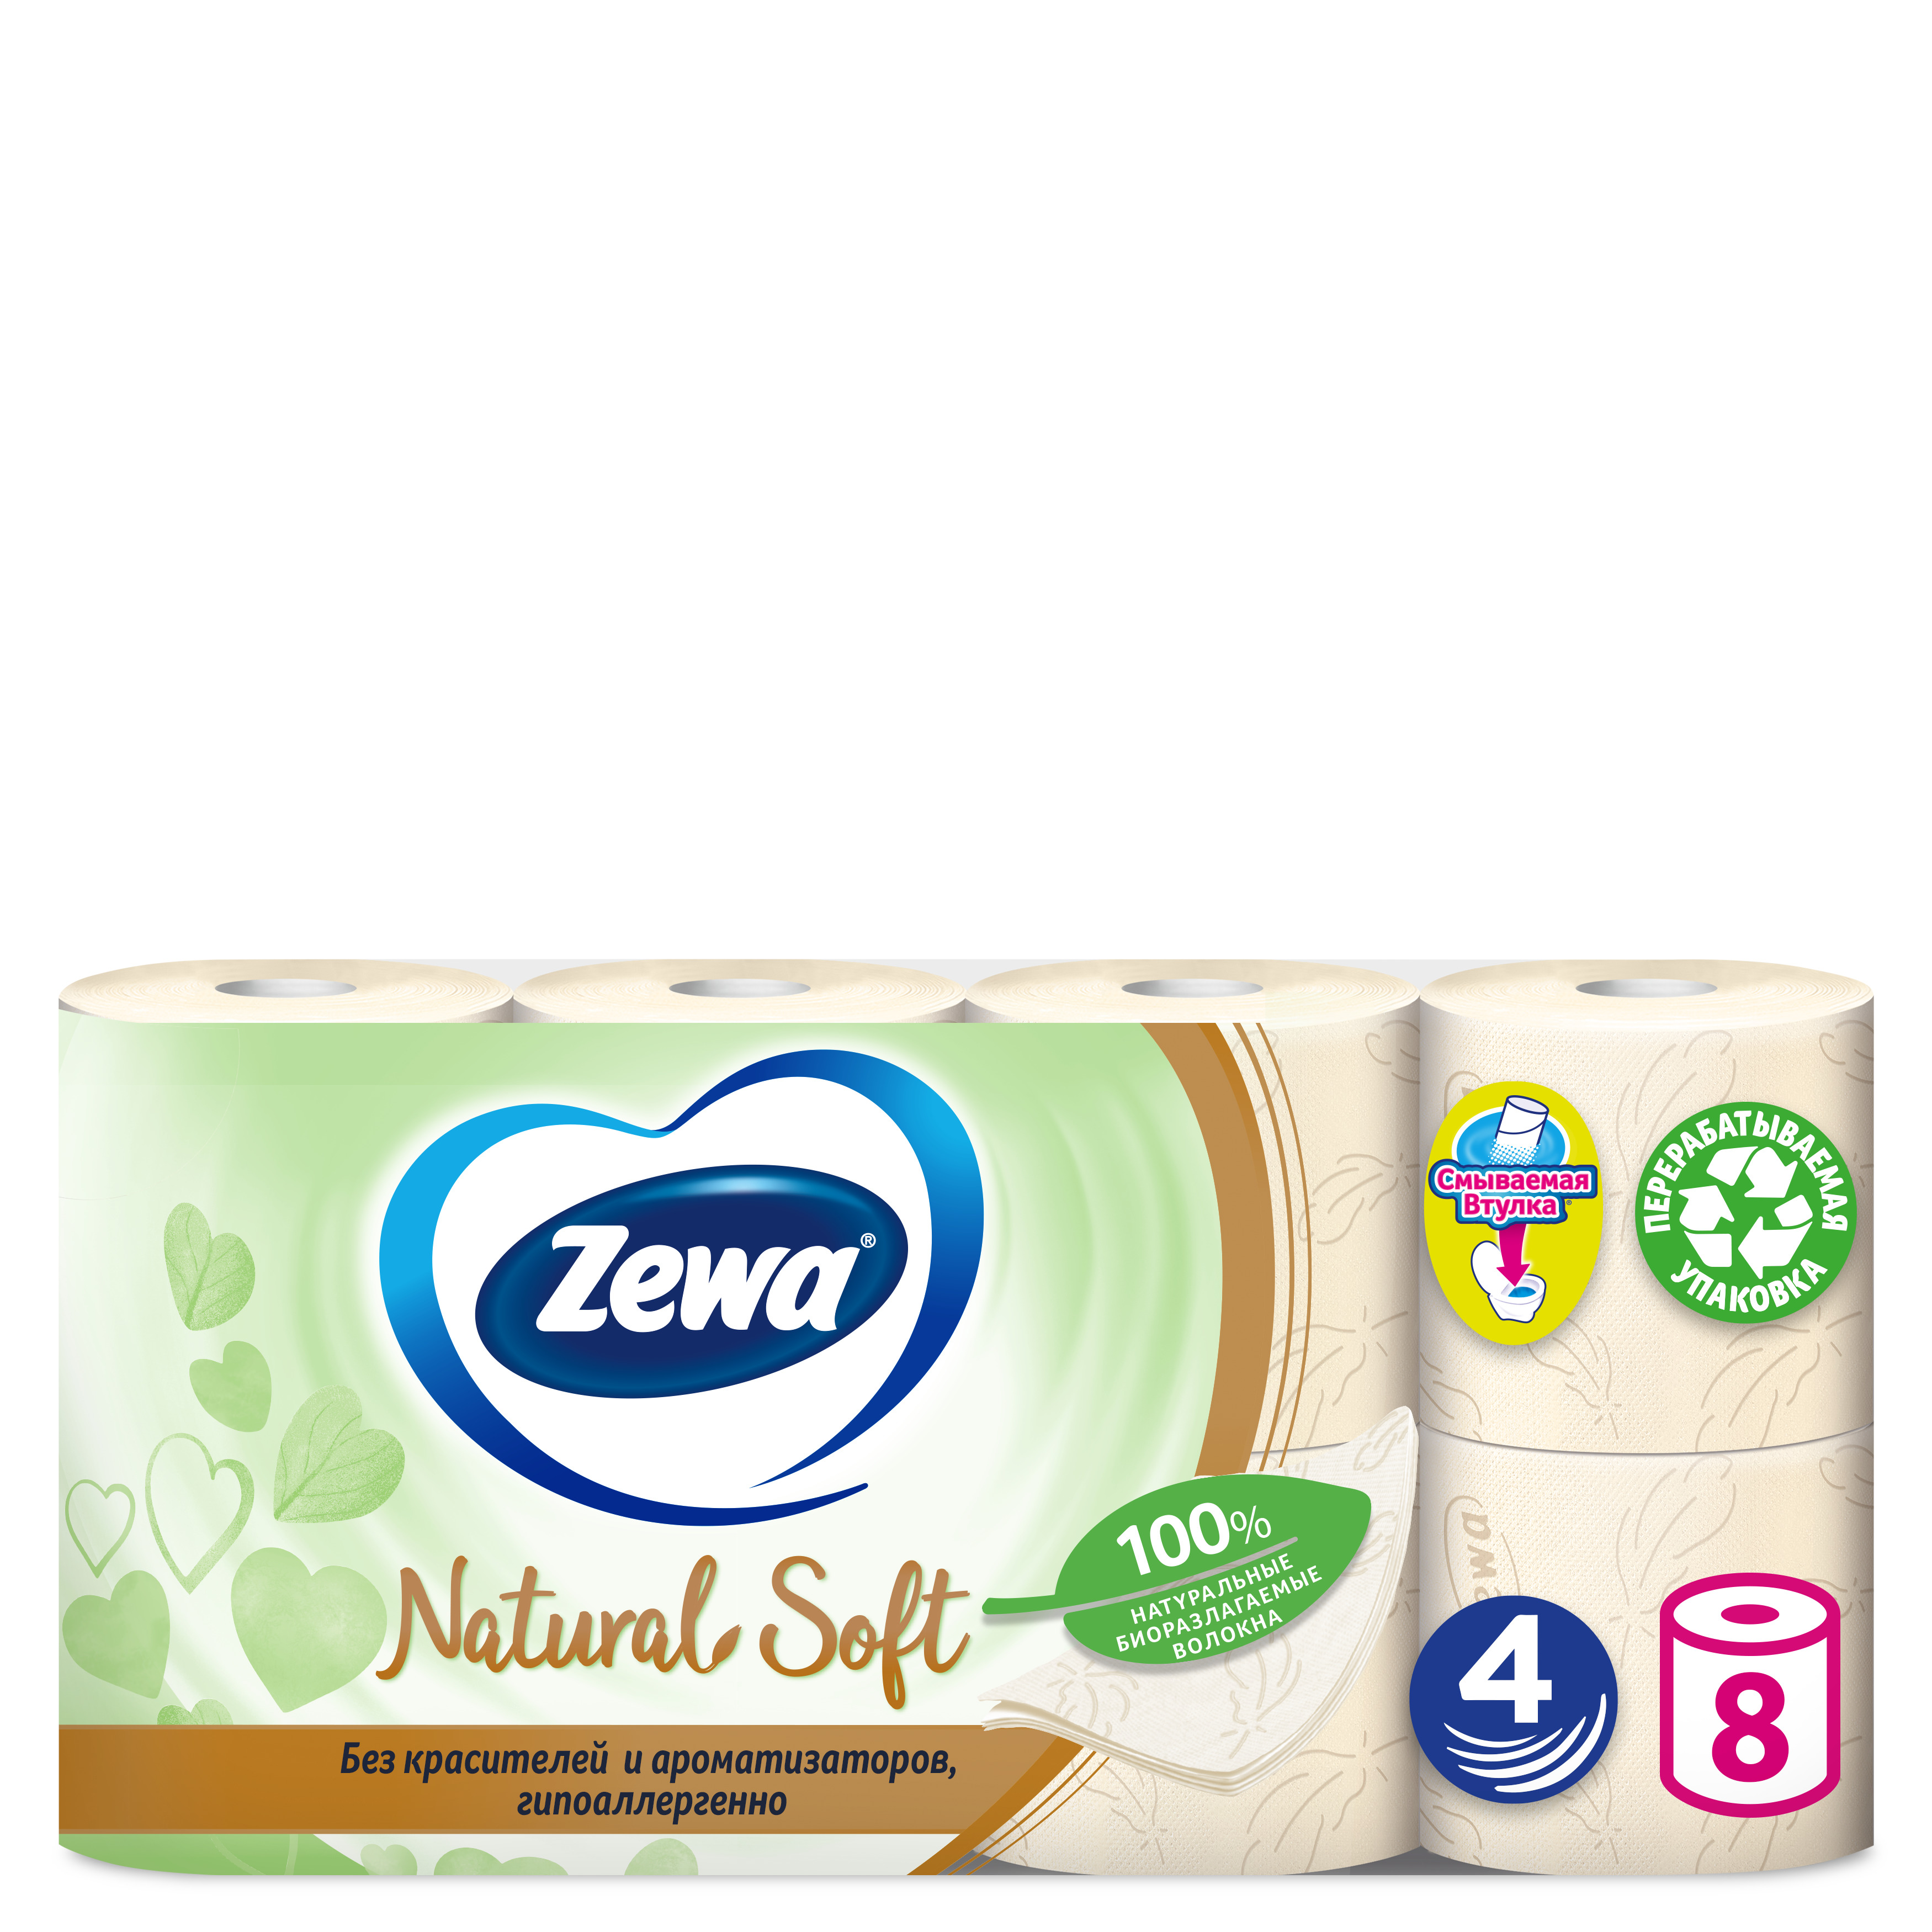 Туалетная Бумага Zewa Natural Soft 4 слоя  8 рулонов туалетная бумага zewa плюс 2 слоя 8 рулонов сирень